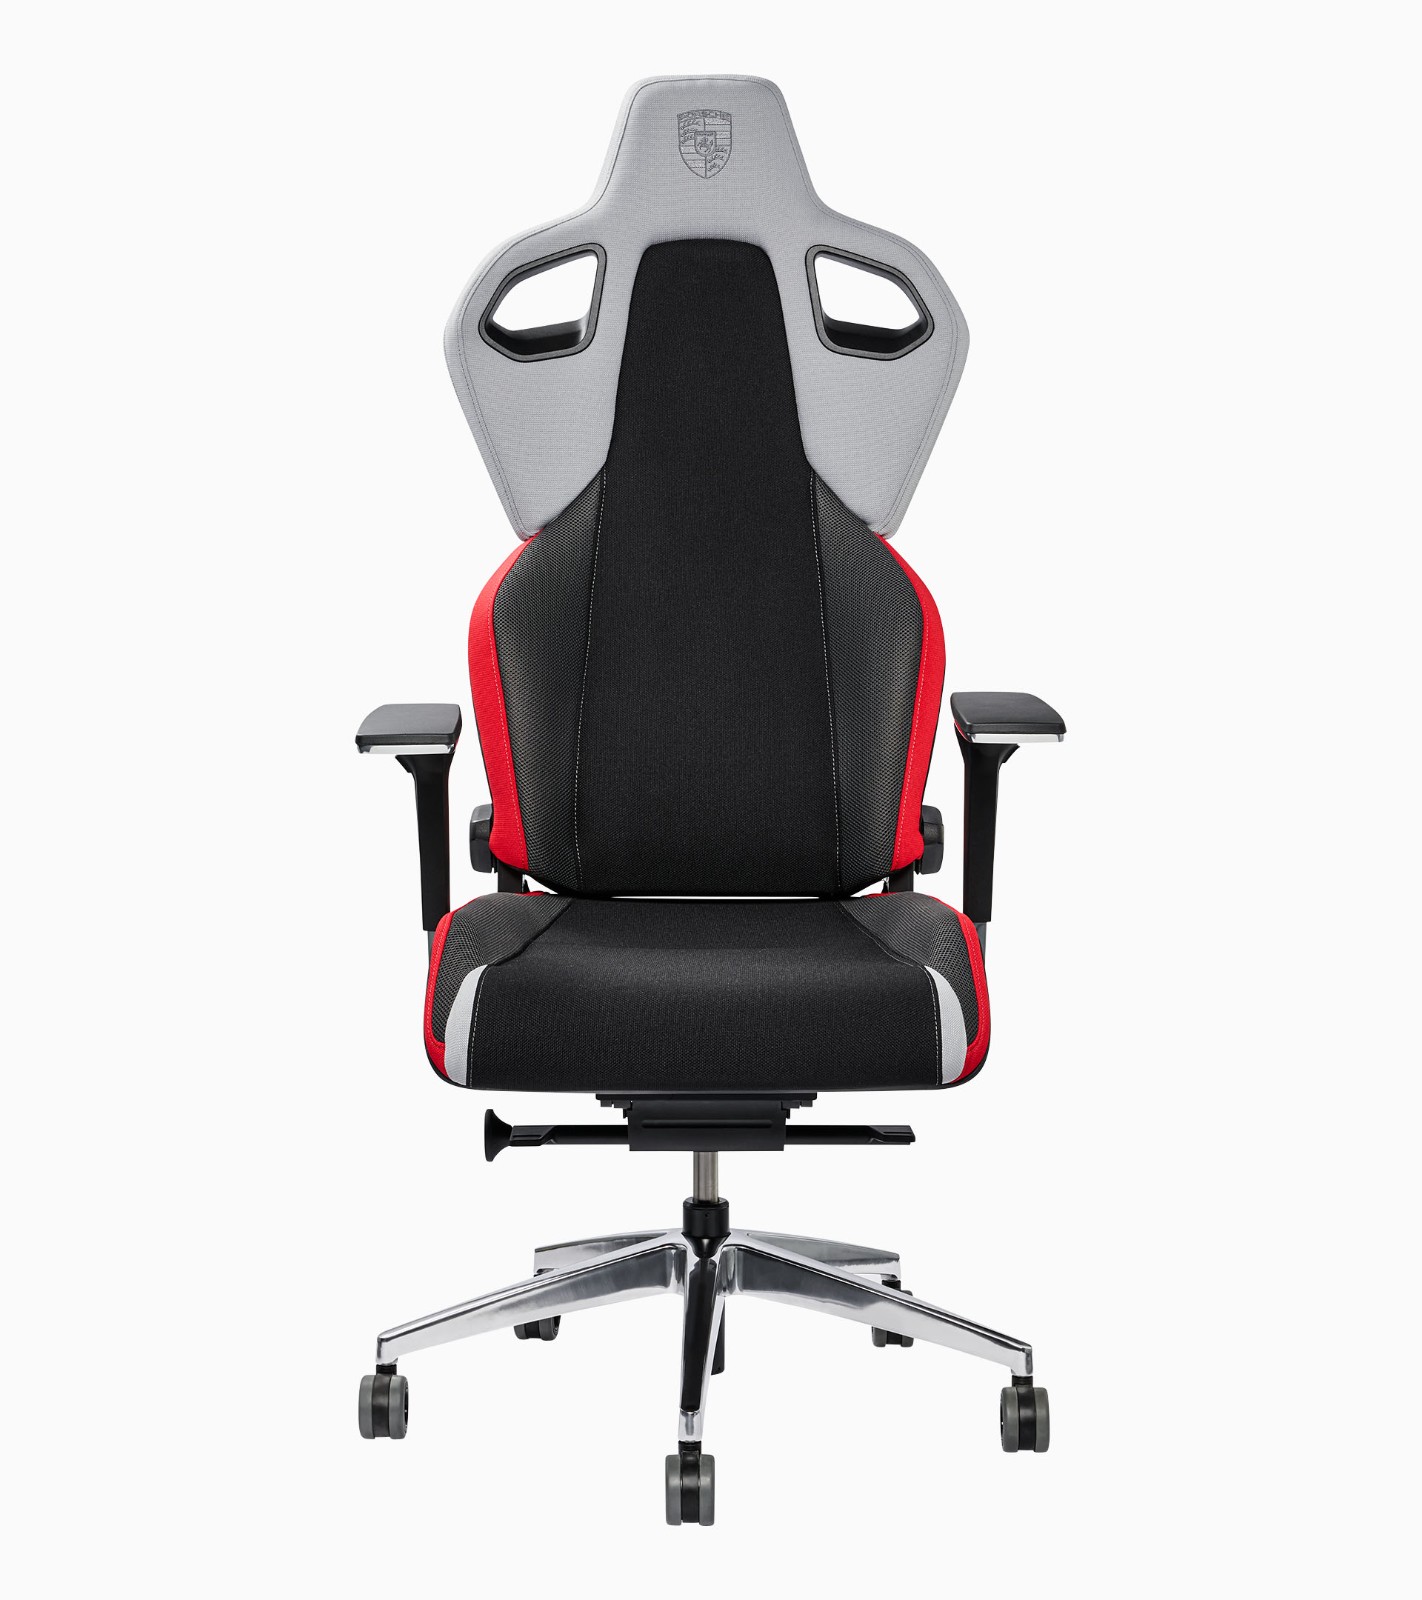 保时捷联合RECARO推出赛车外观电竞椅 售价近1.7万元 二次世界 第4张